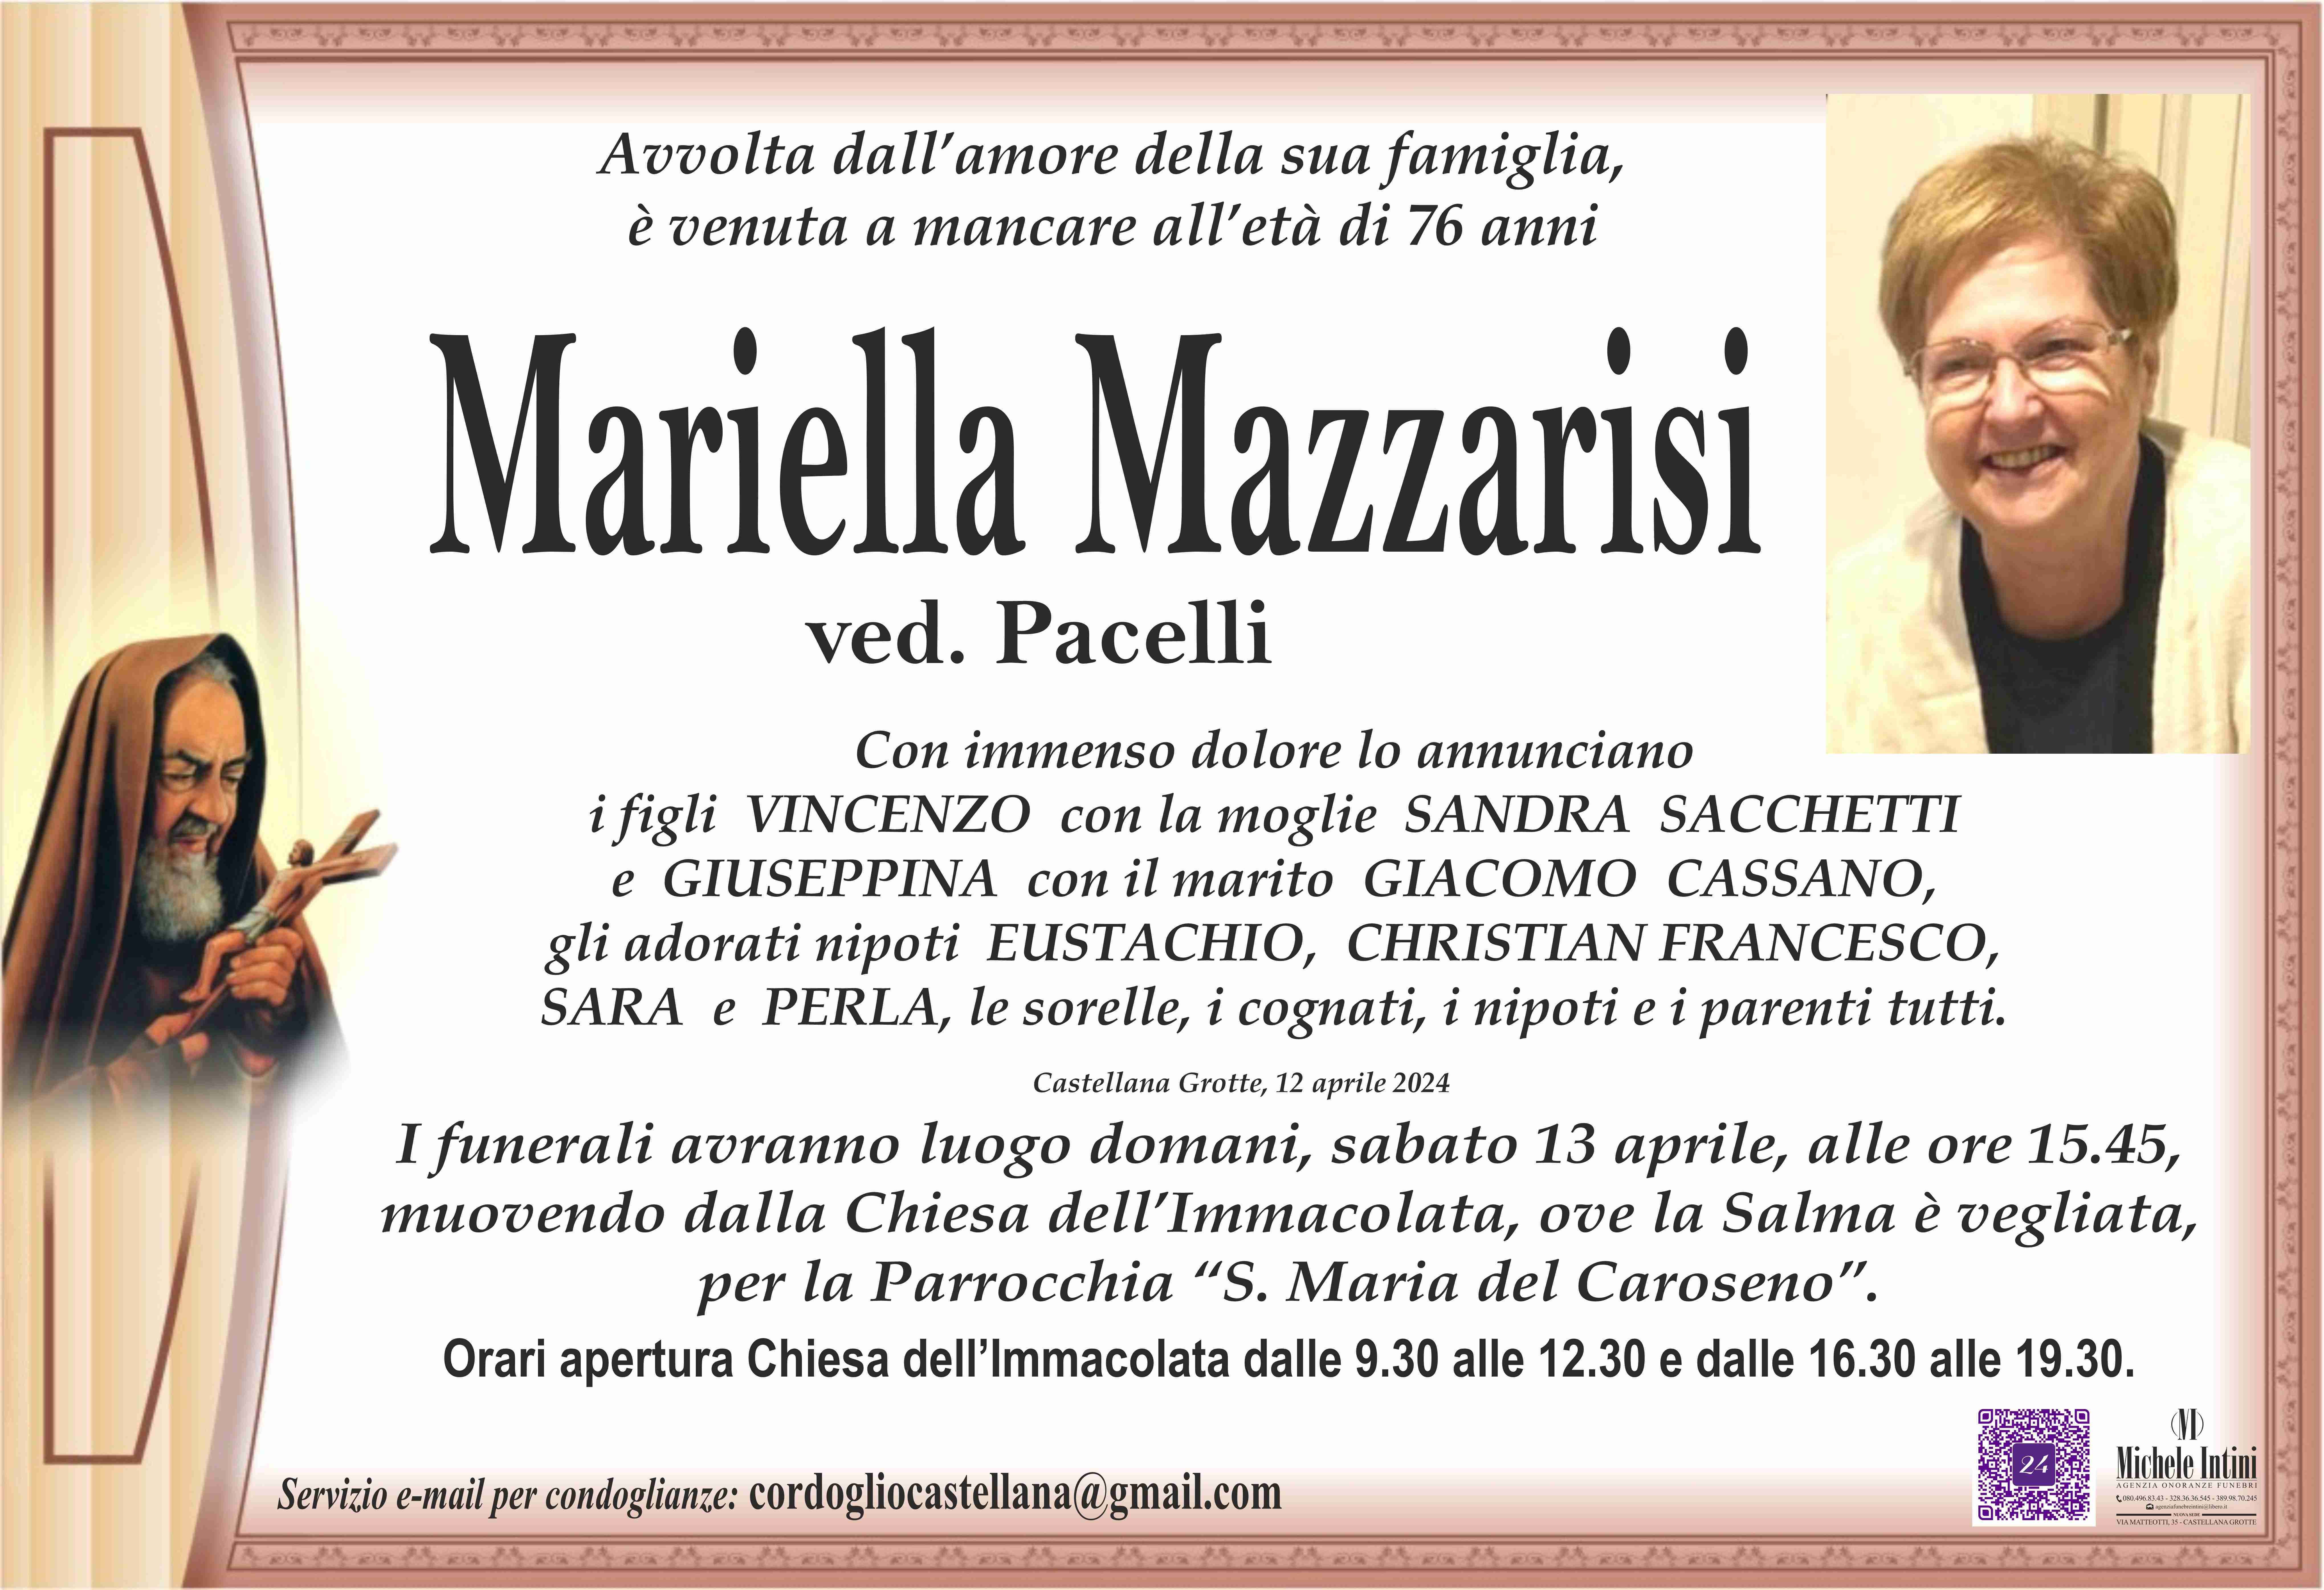 Mariella Mazzarisi